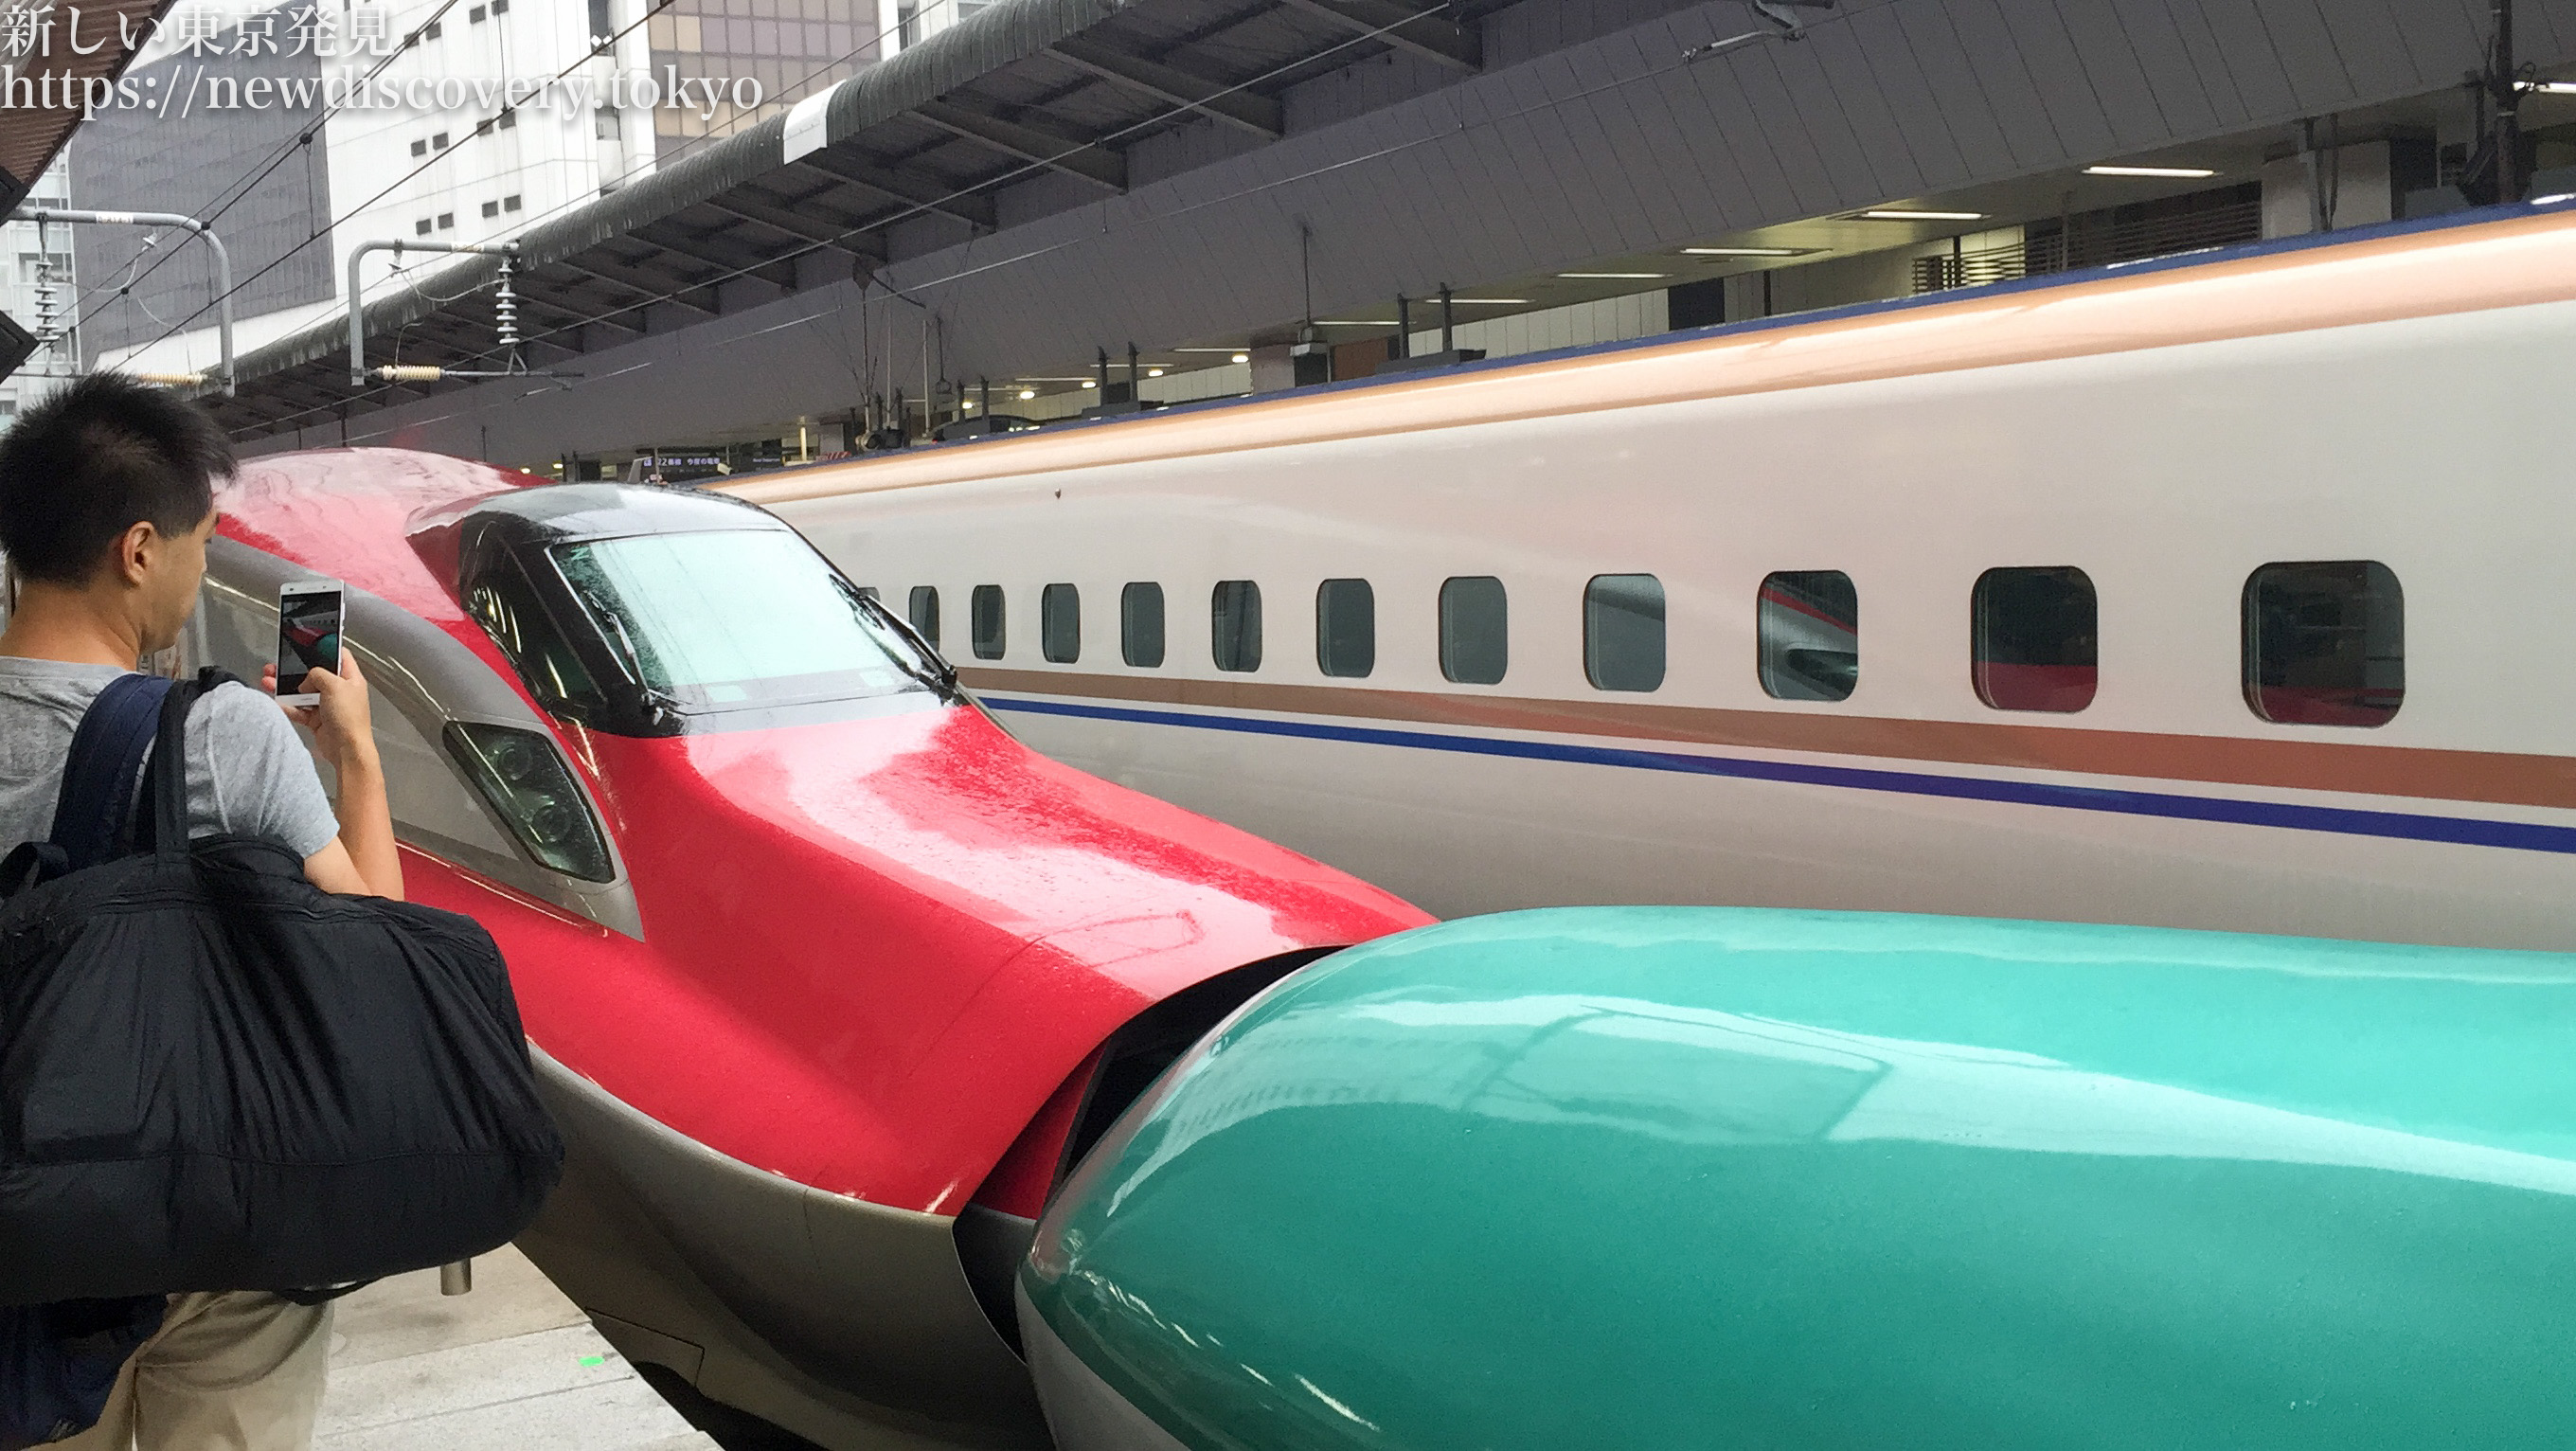 子鉄トレインビュースポット 東京駅で 電車好きな子供 と新幹線をたっぷり見よう はやぶさ こまち連結や かがやきなども見れるよ 子連れパパママを応援する情報チャンネル 新しい東京発見